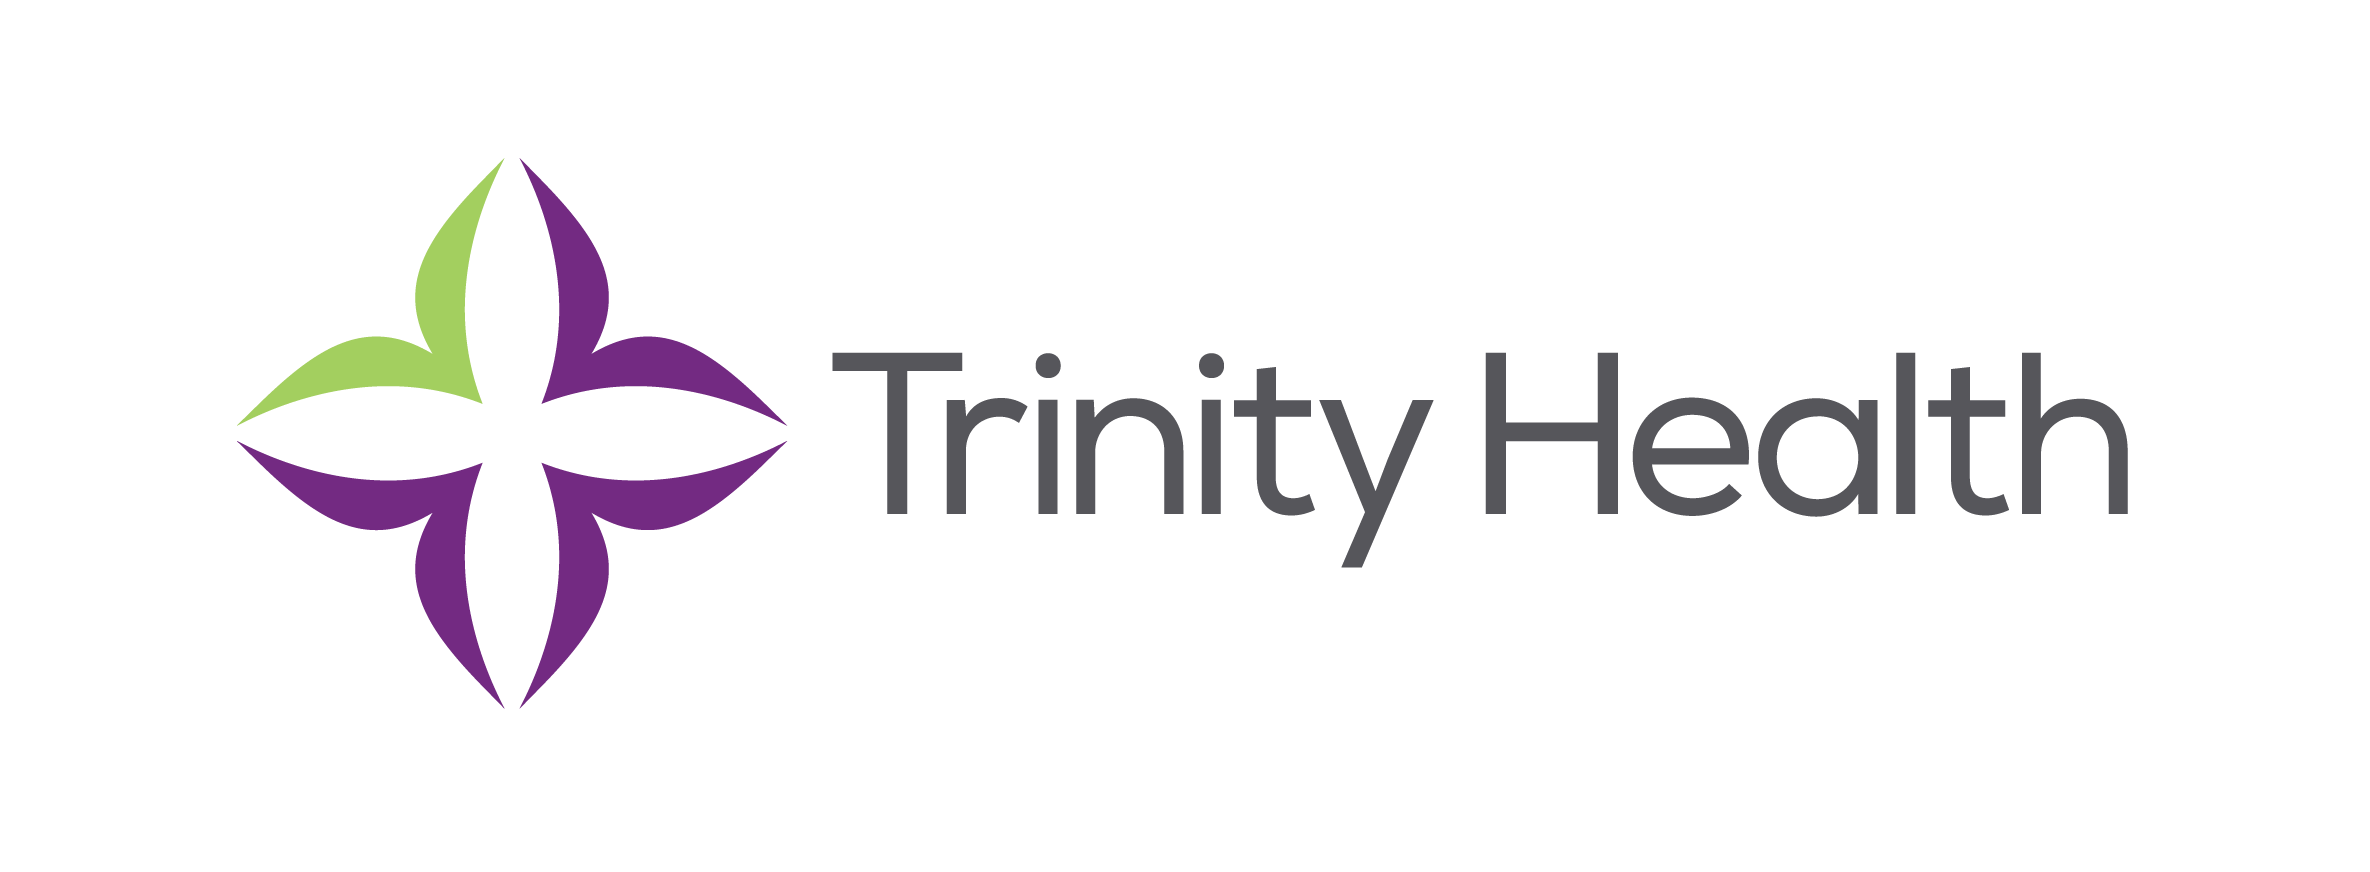 Trinity Health logo